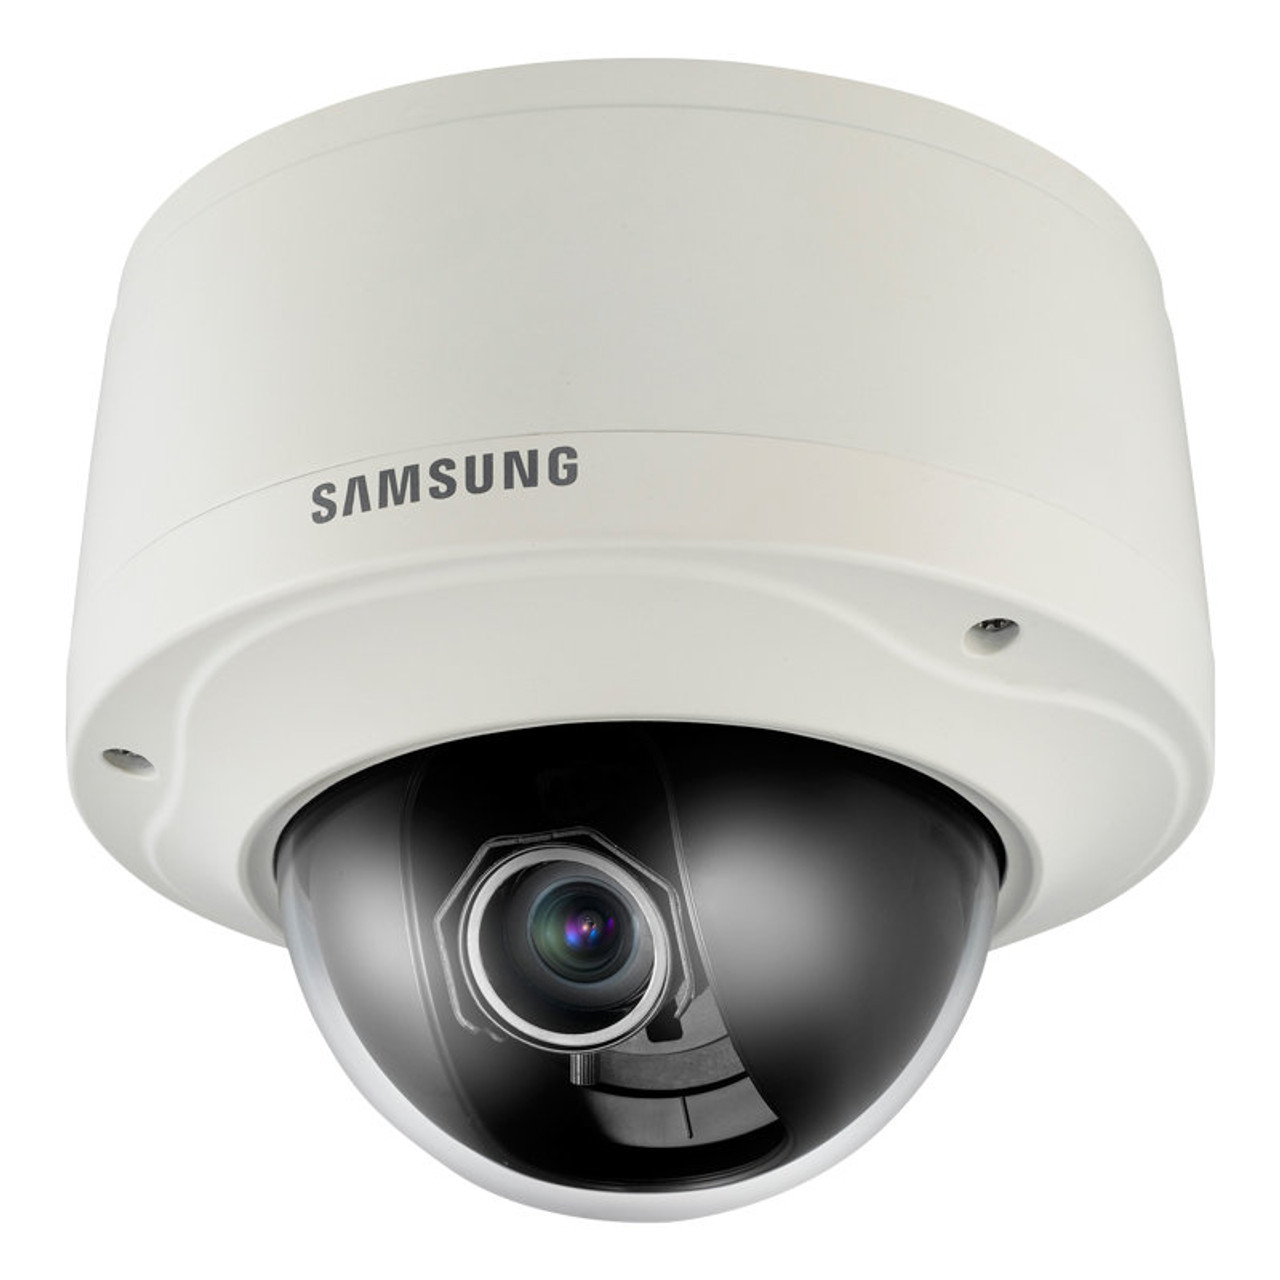 jerarquía Alpinista bronce Samsung Hanwha SNV-5080 Outdoor Dome IP Camera